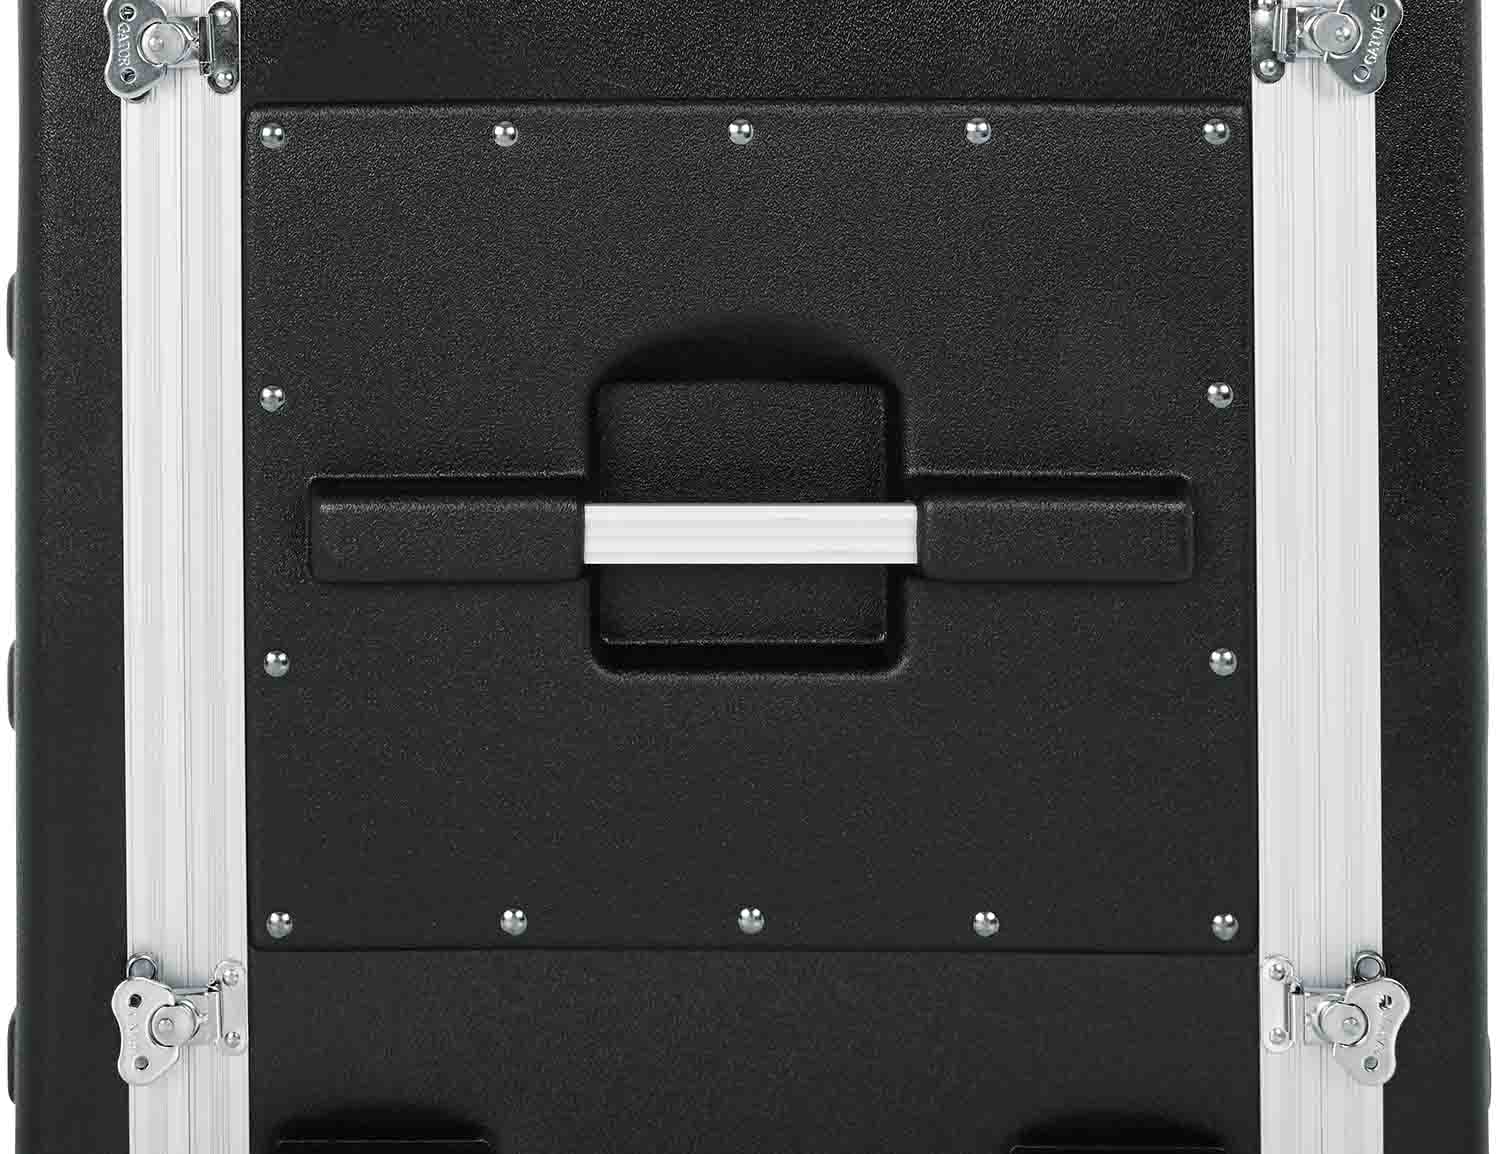 Gator Cases GRR-10L, 10U Rolling Rack Case by Gator Cases